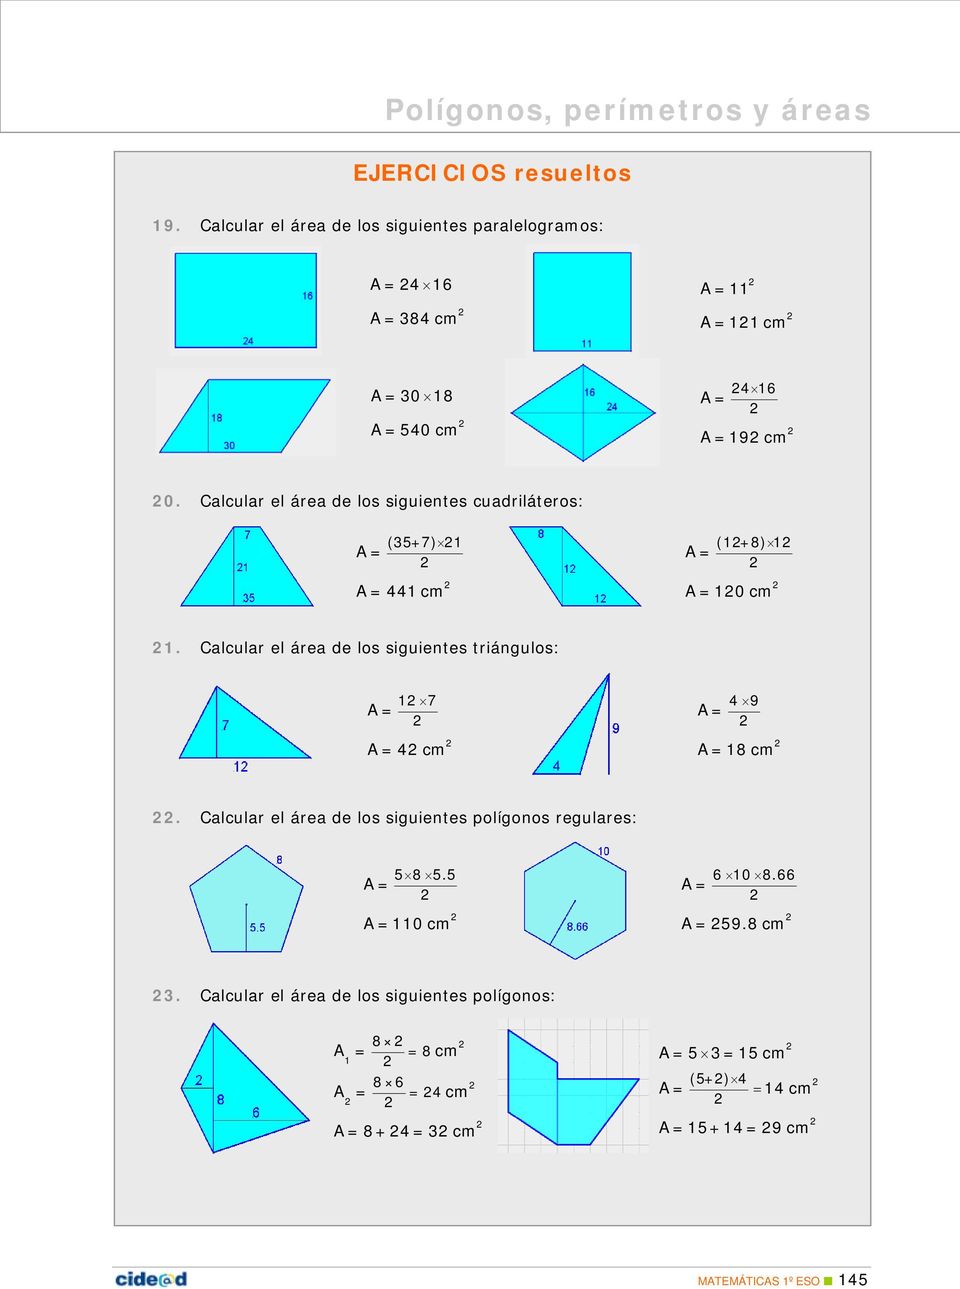 Calcular el área de los siguientes triángulos: 1 7 A= A=4 cm 4 9 A= A=18 cm. Calcular el área de los siguientes polígonos regulares: 5 8 5.